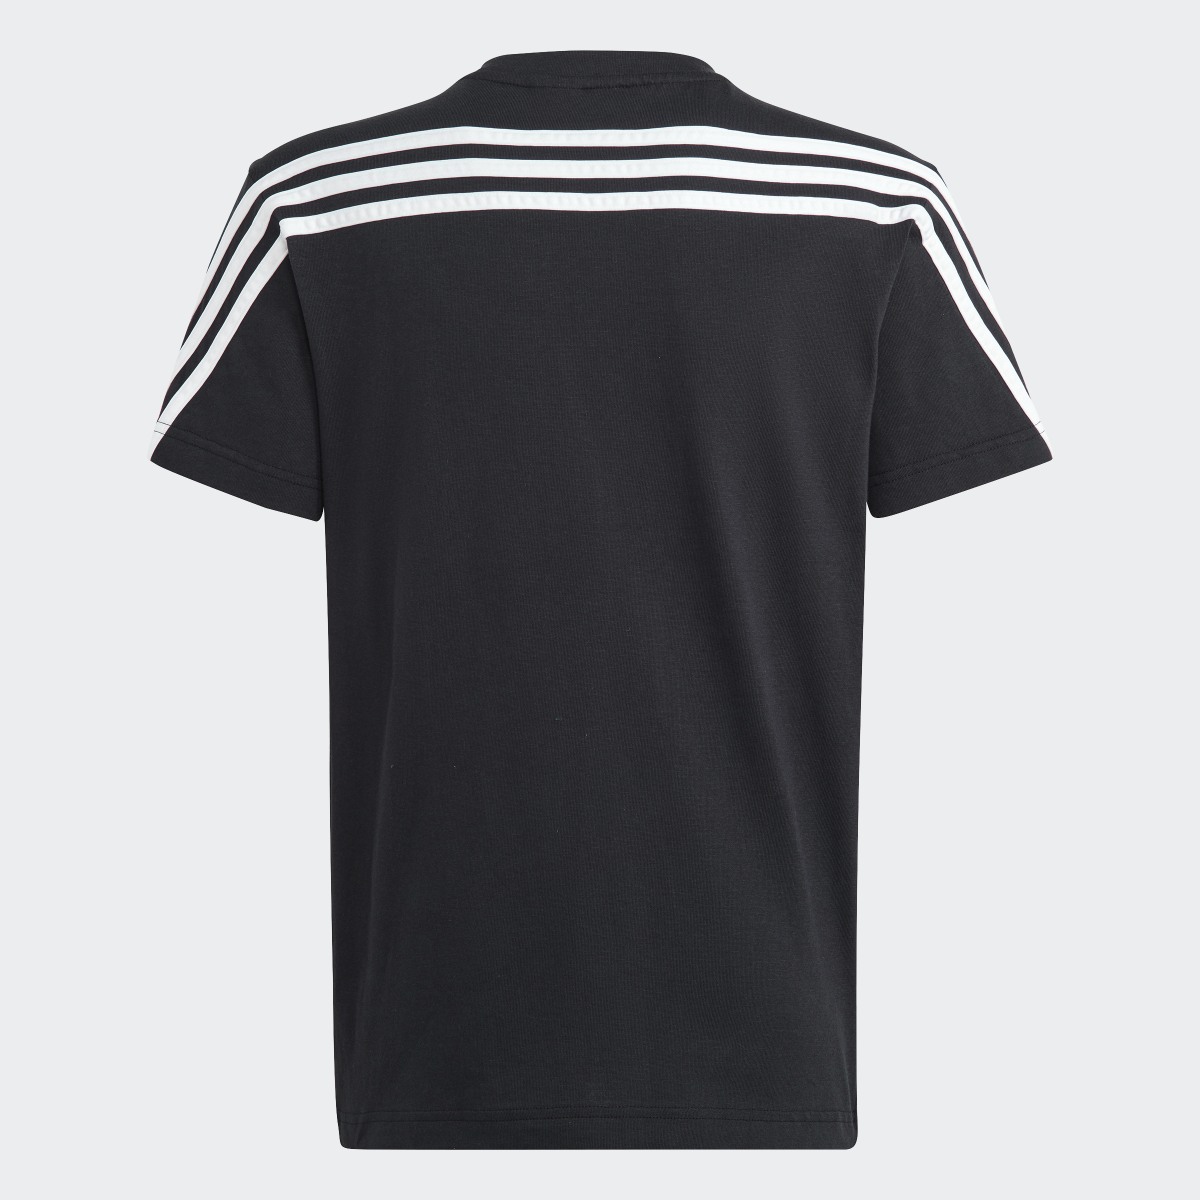 Adidas Future Icons 3-Streifen T-Shirt. 4